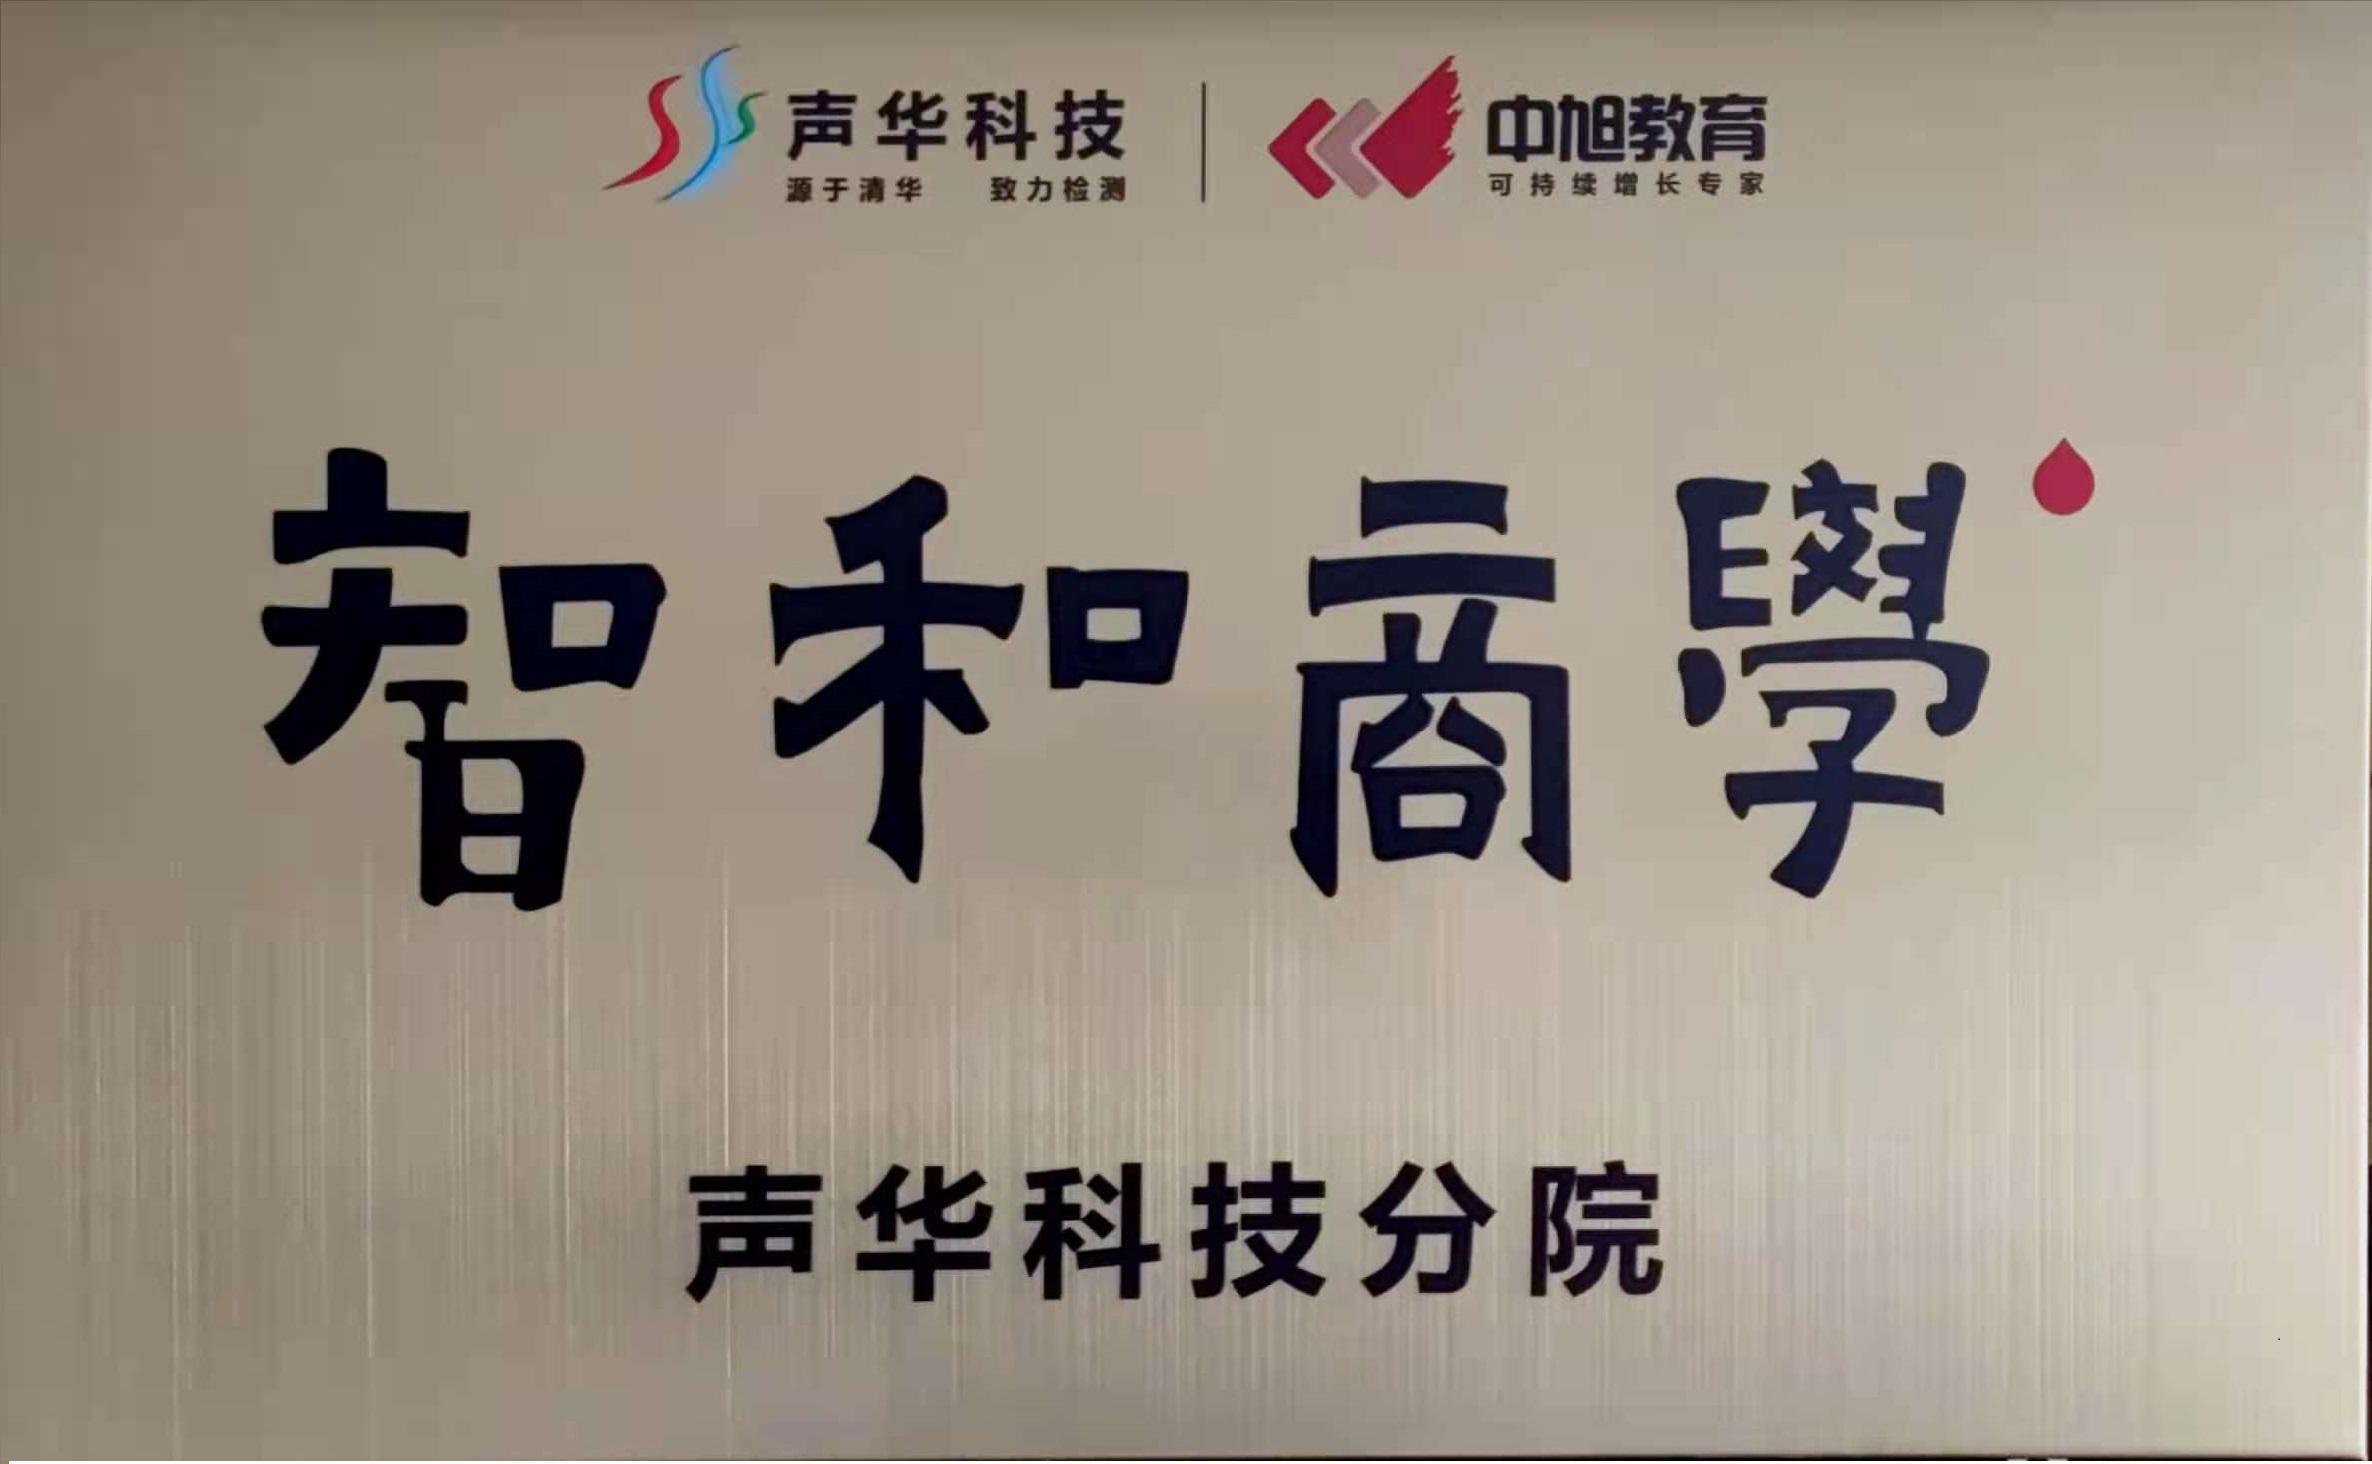 祝贺广州js6668金沙登录入口欢迎您股份有限公司 “智和商学”正式成立